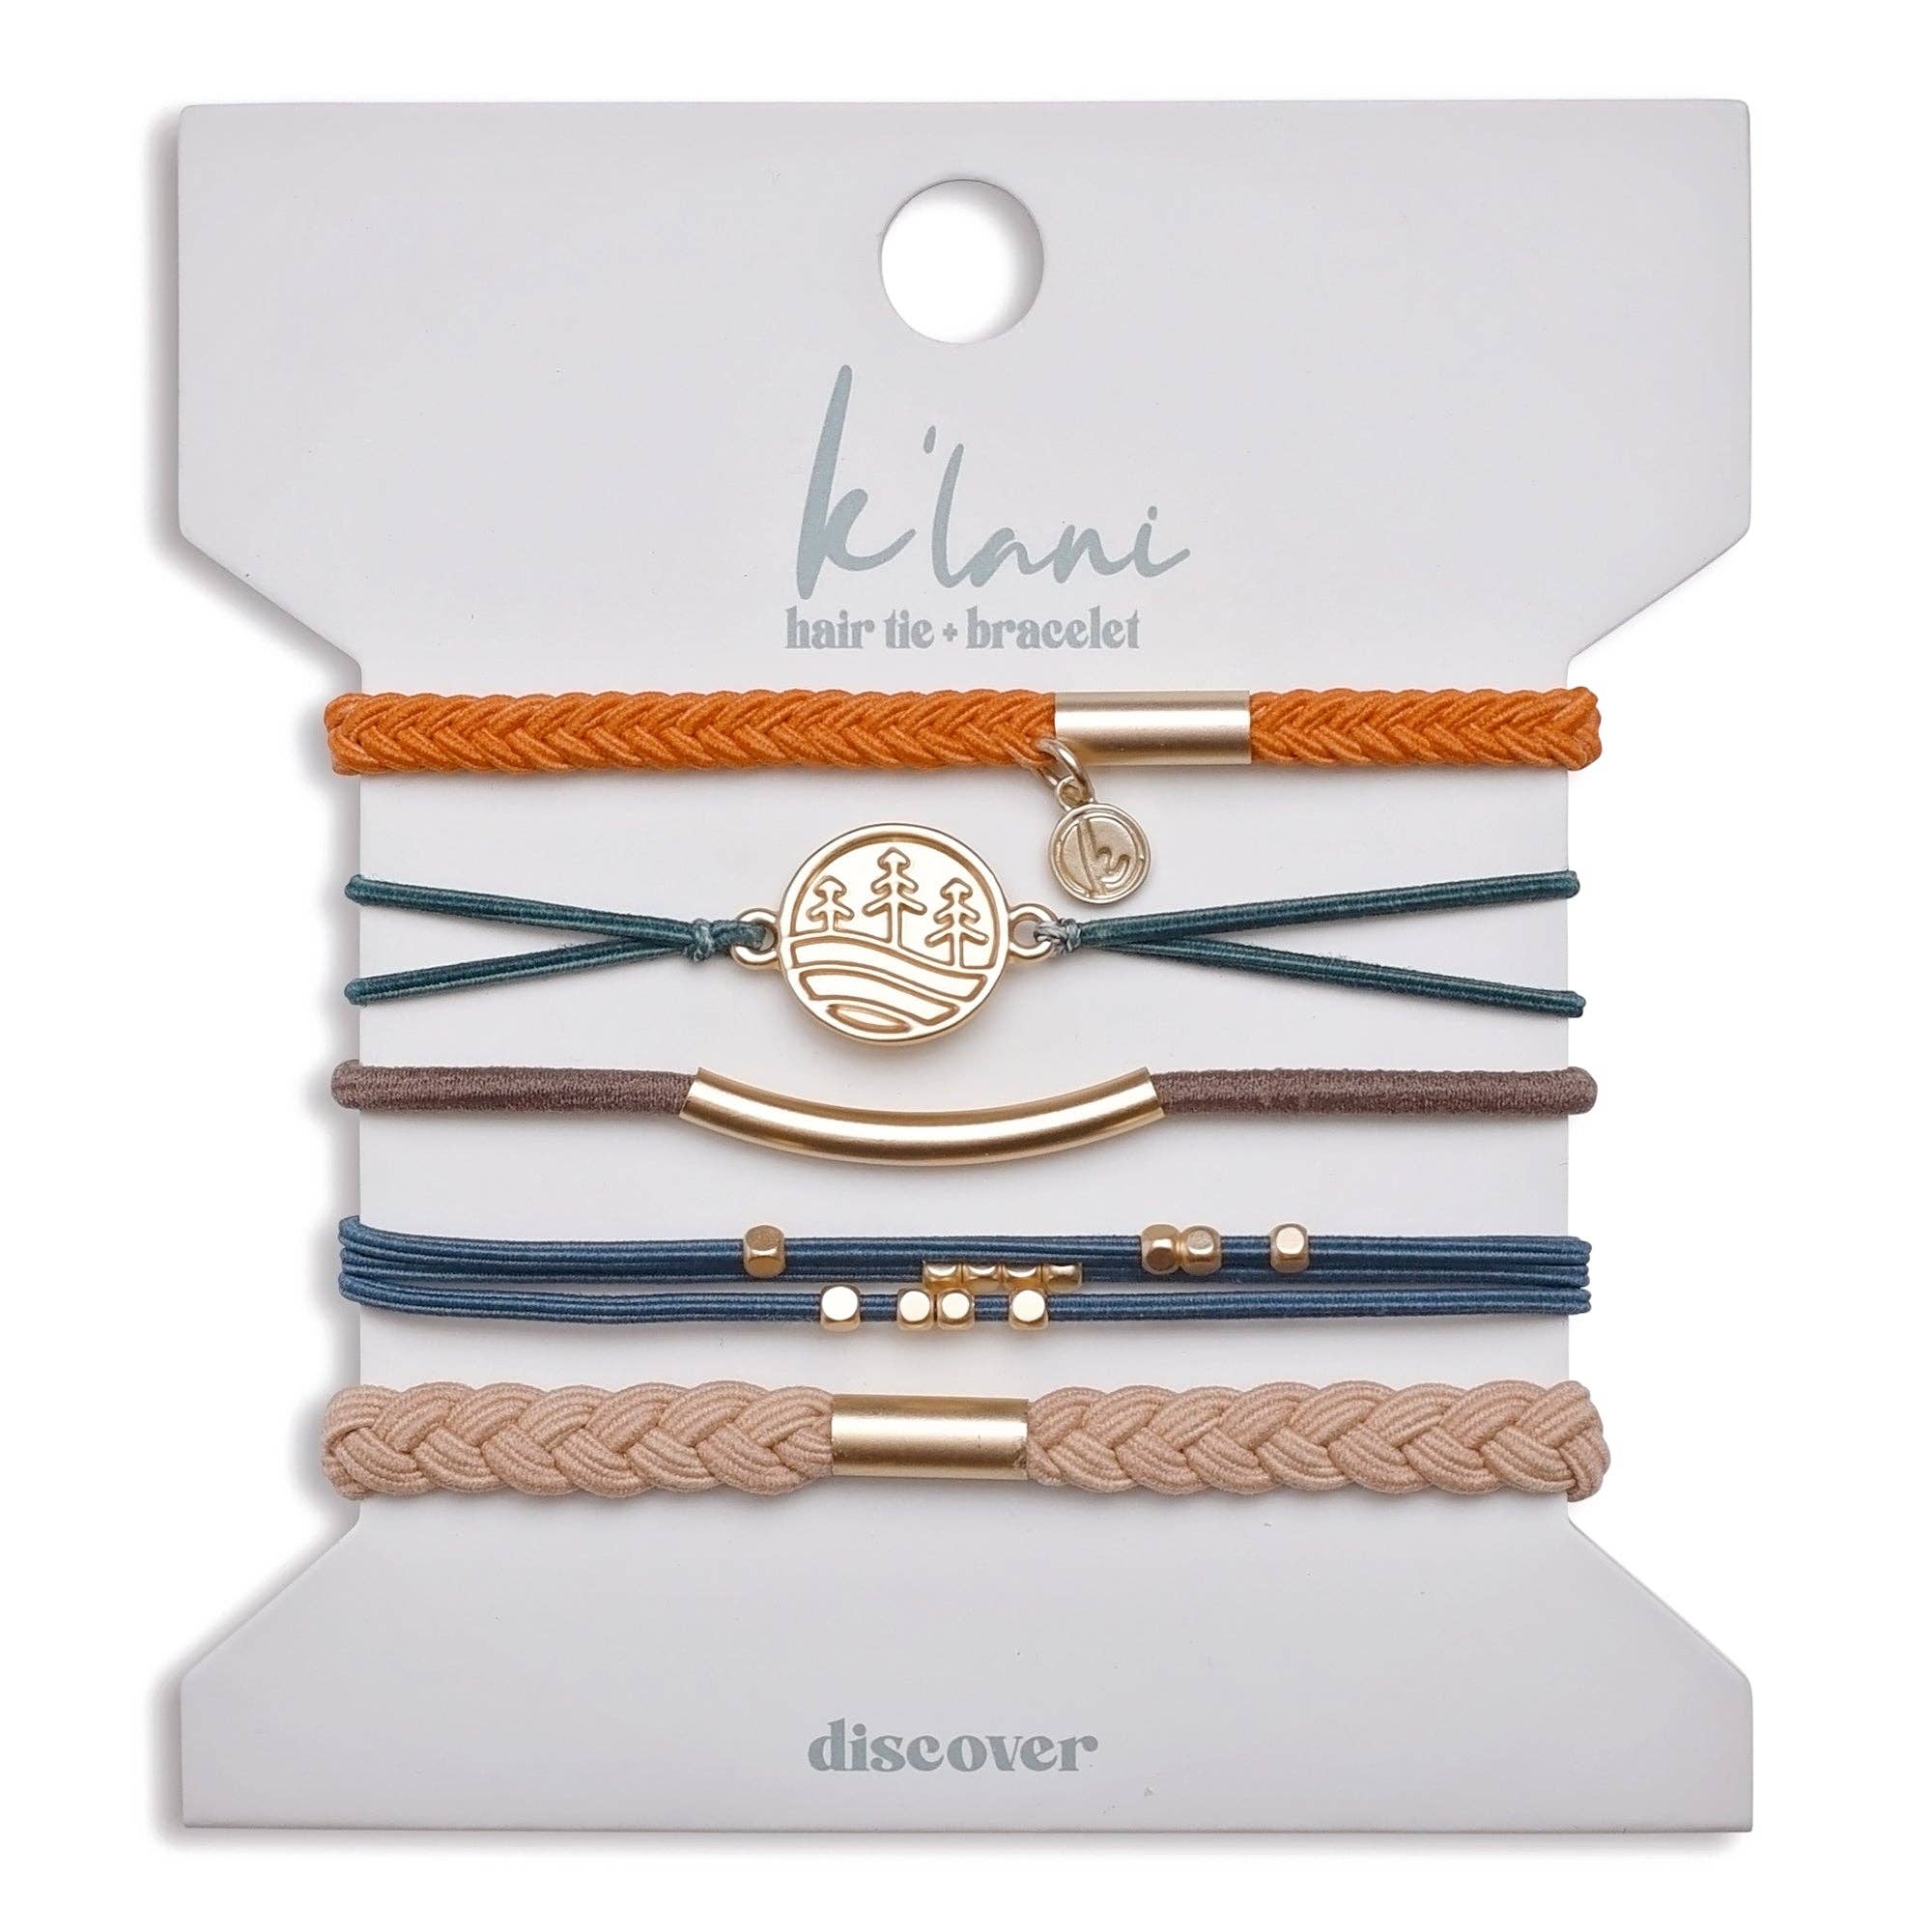 K'Lani hair tie bracelets - Discover